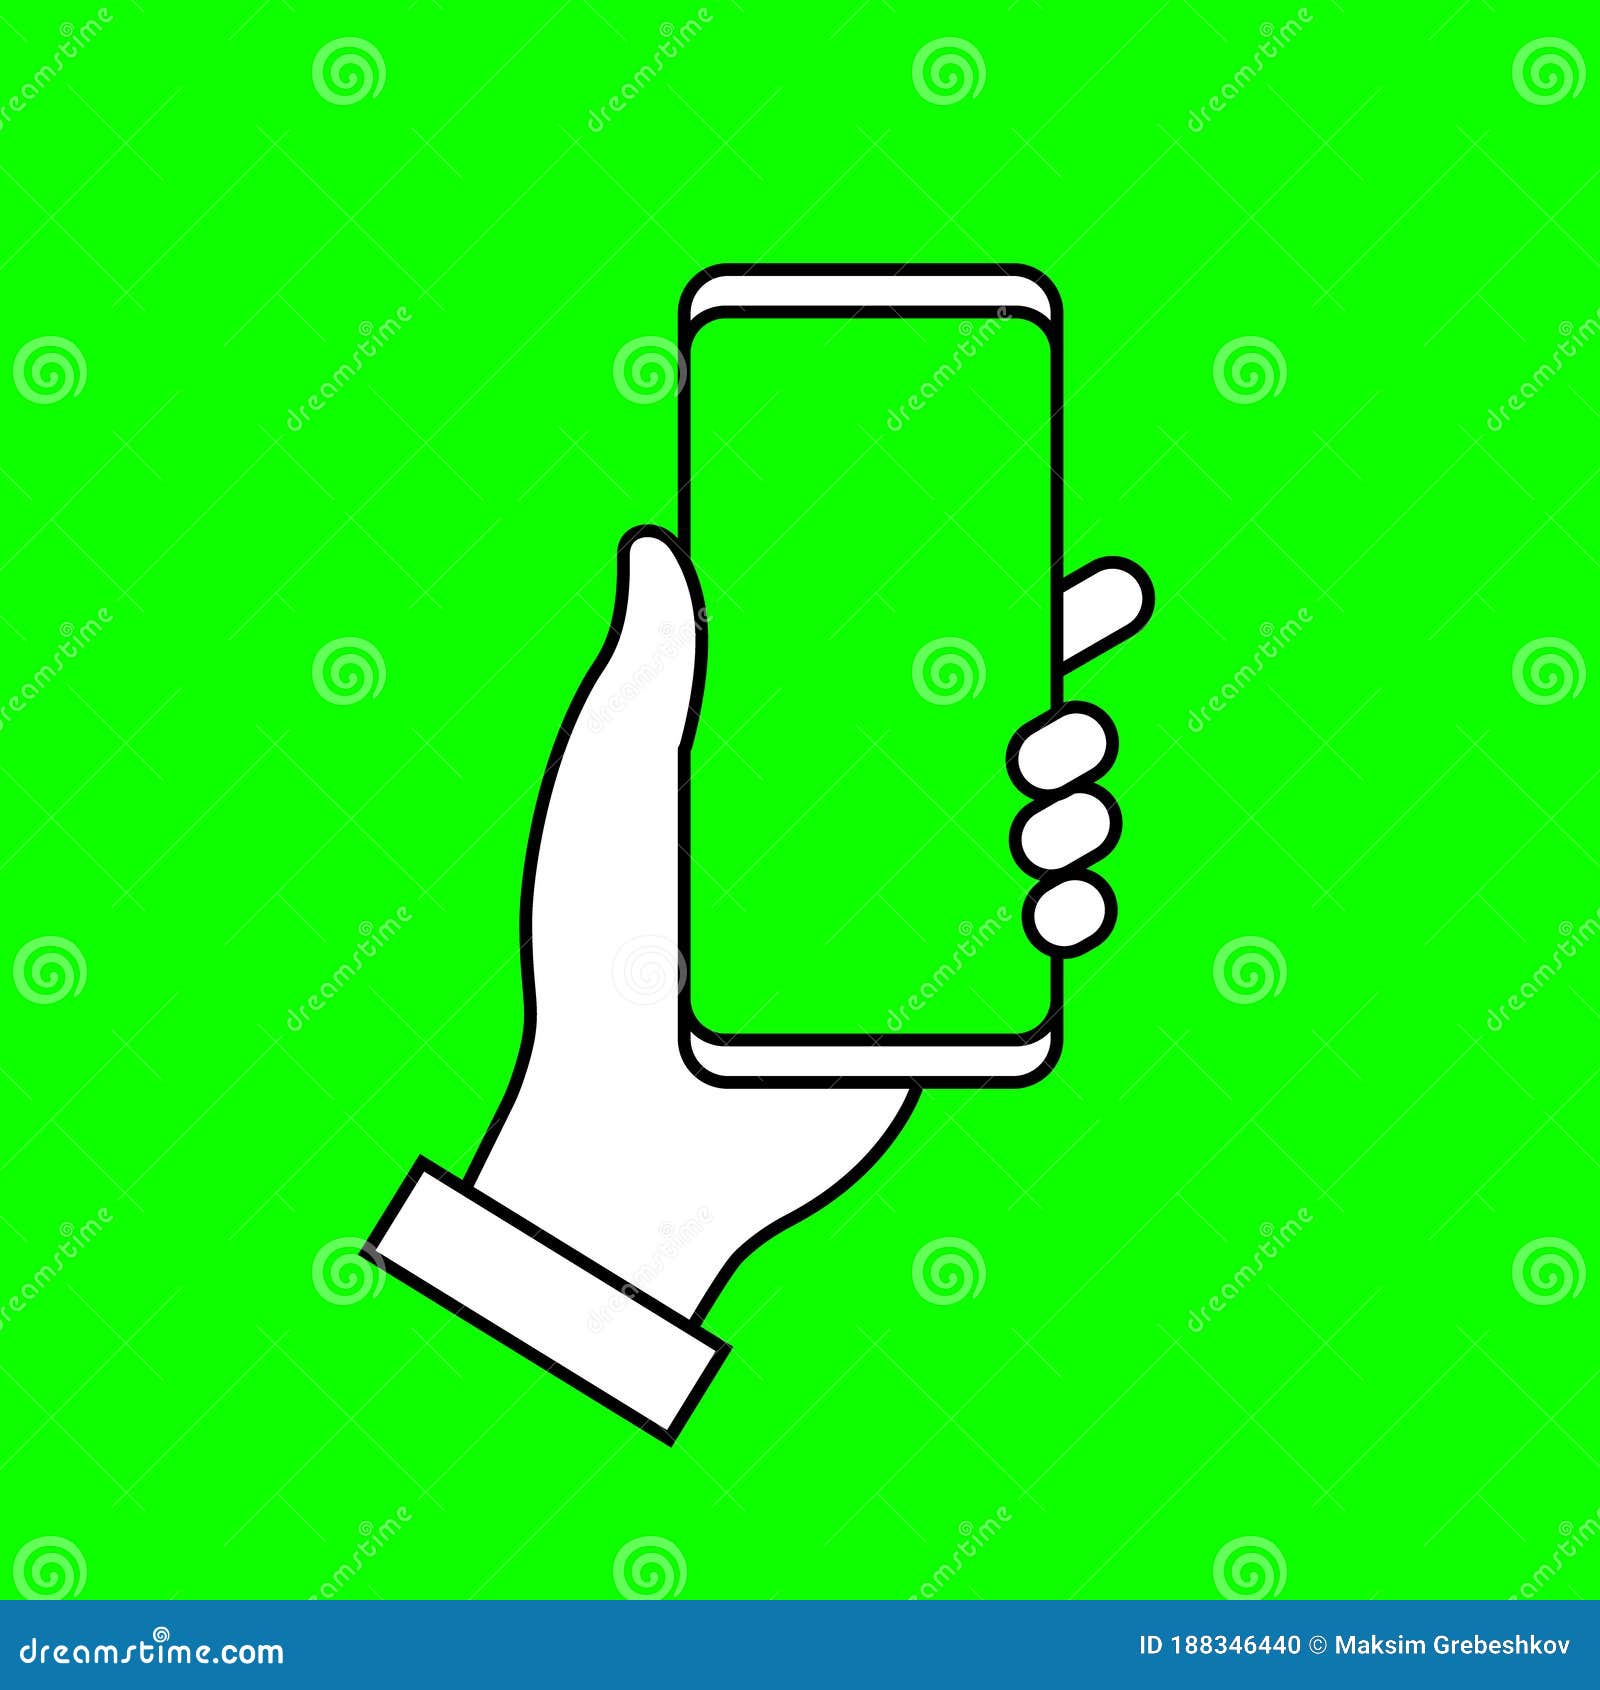 Teléfono con fondo de pantalla verde chroma key. plantilla para su